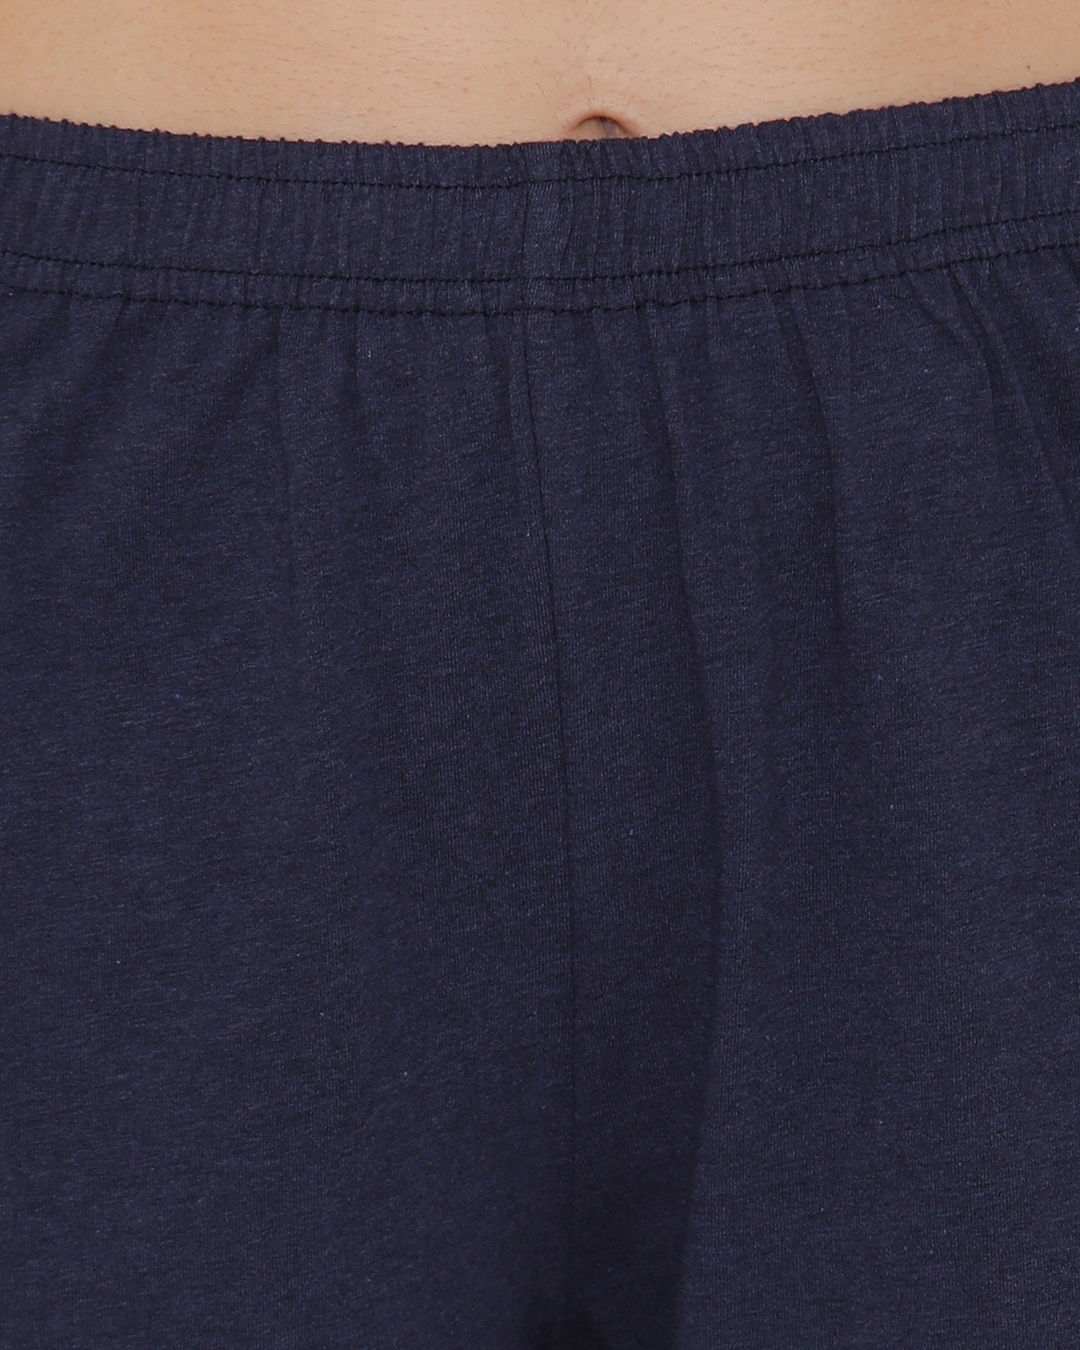 Shop Women's Cotton Rich Boxer Shorts